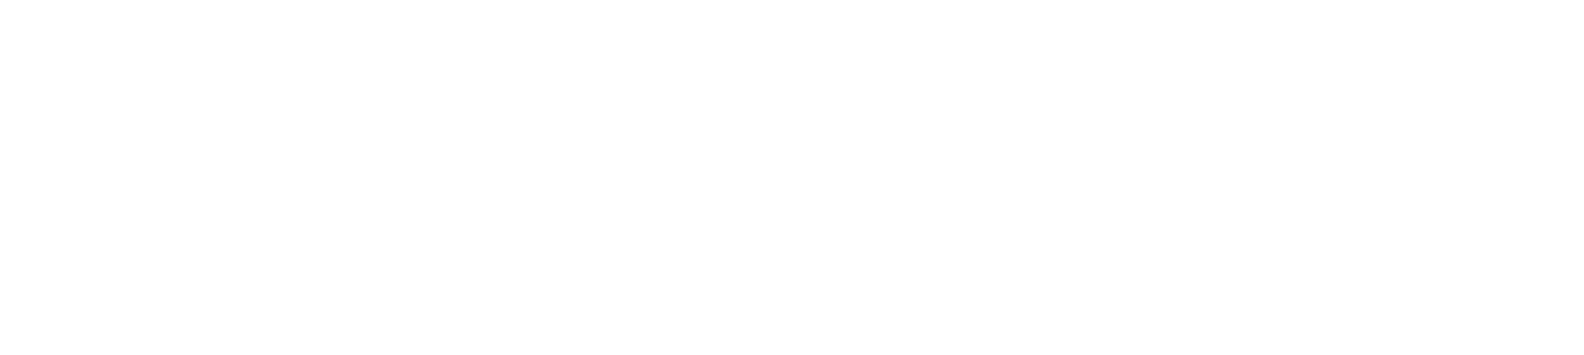 C. H. Robinson Logo groß für dunkle Hintergründe (transparentes PNG)